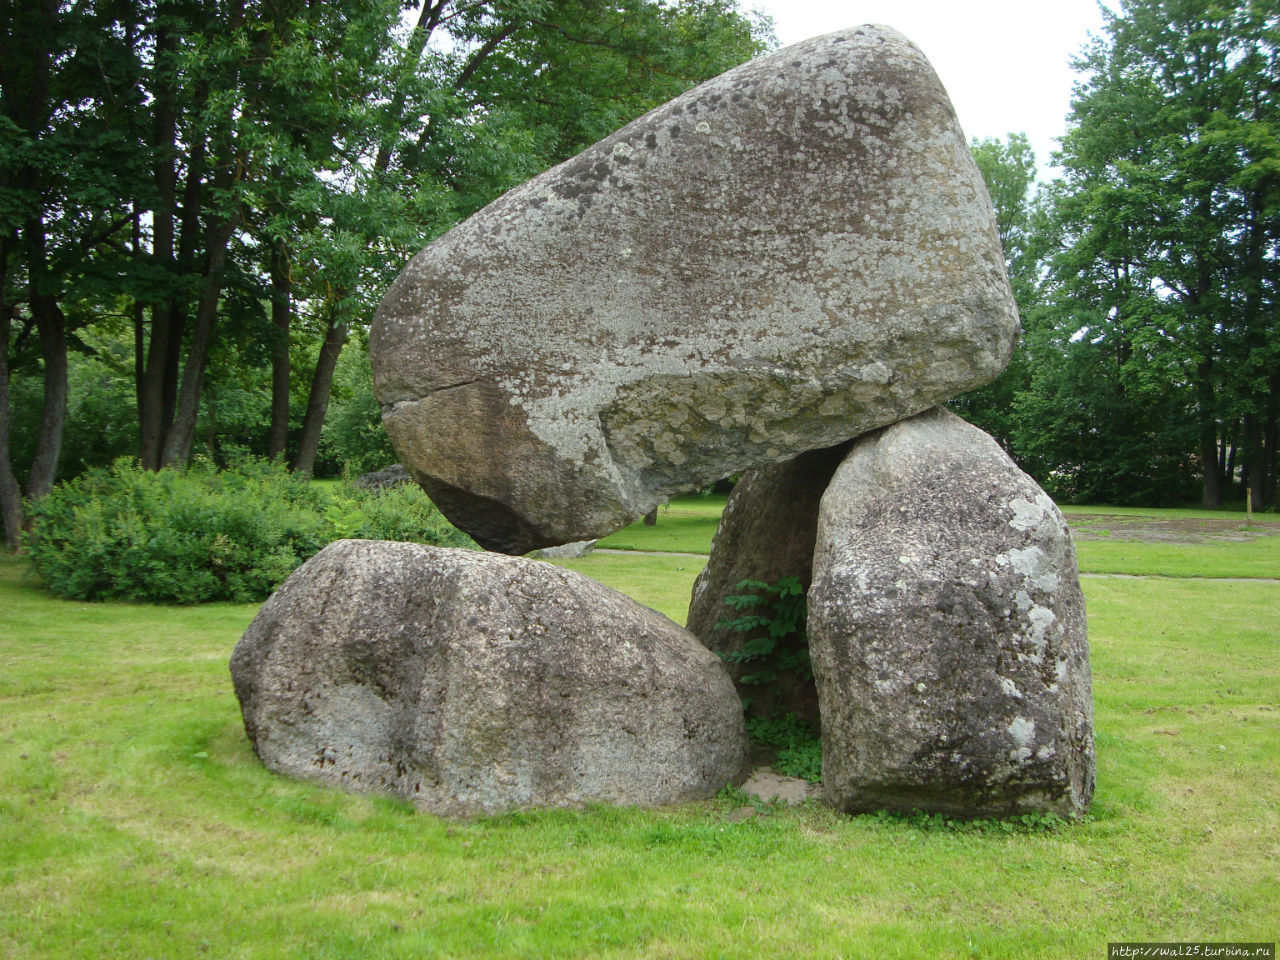 Фантазии из камней появились в Медвежьем парке в Балви в 90-е годы 20-ого века Балвский район, Латвия